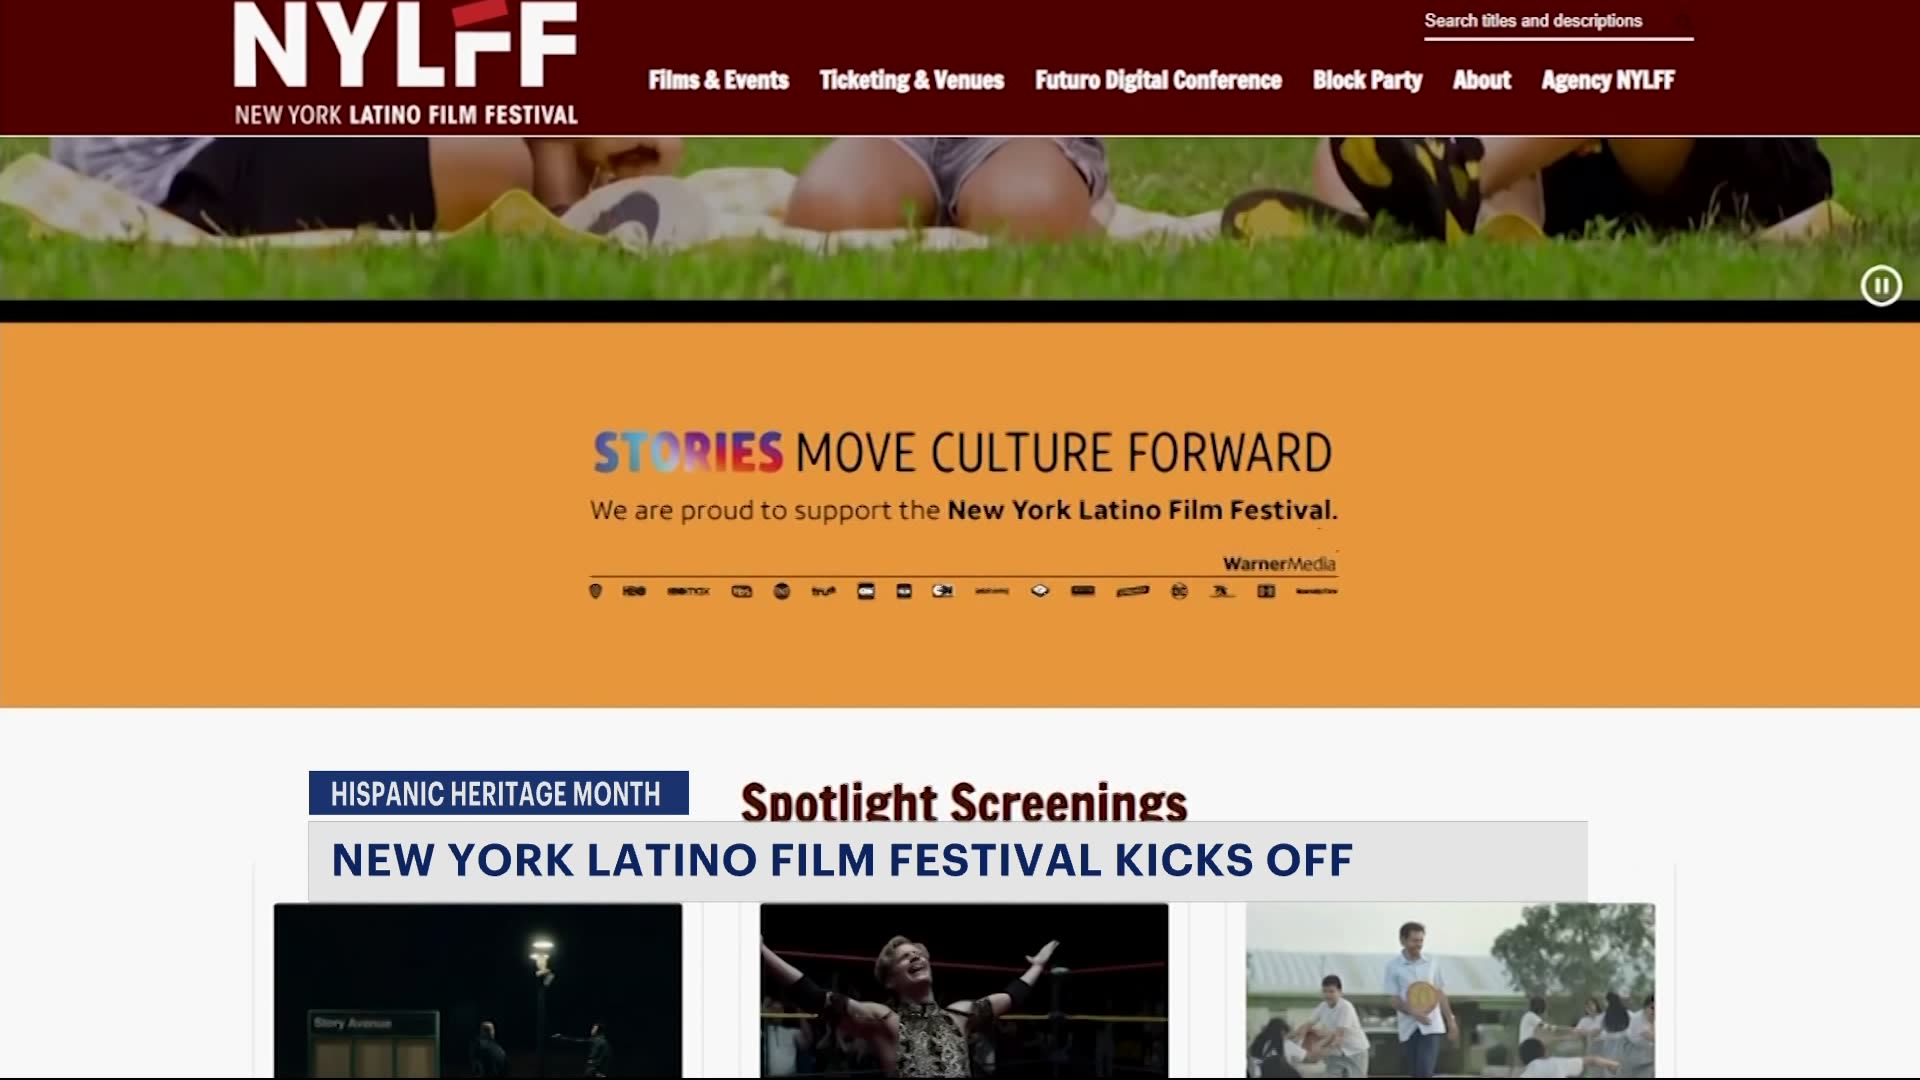 纽约拉丁电影节拉开拉丁裔传统月的序幕